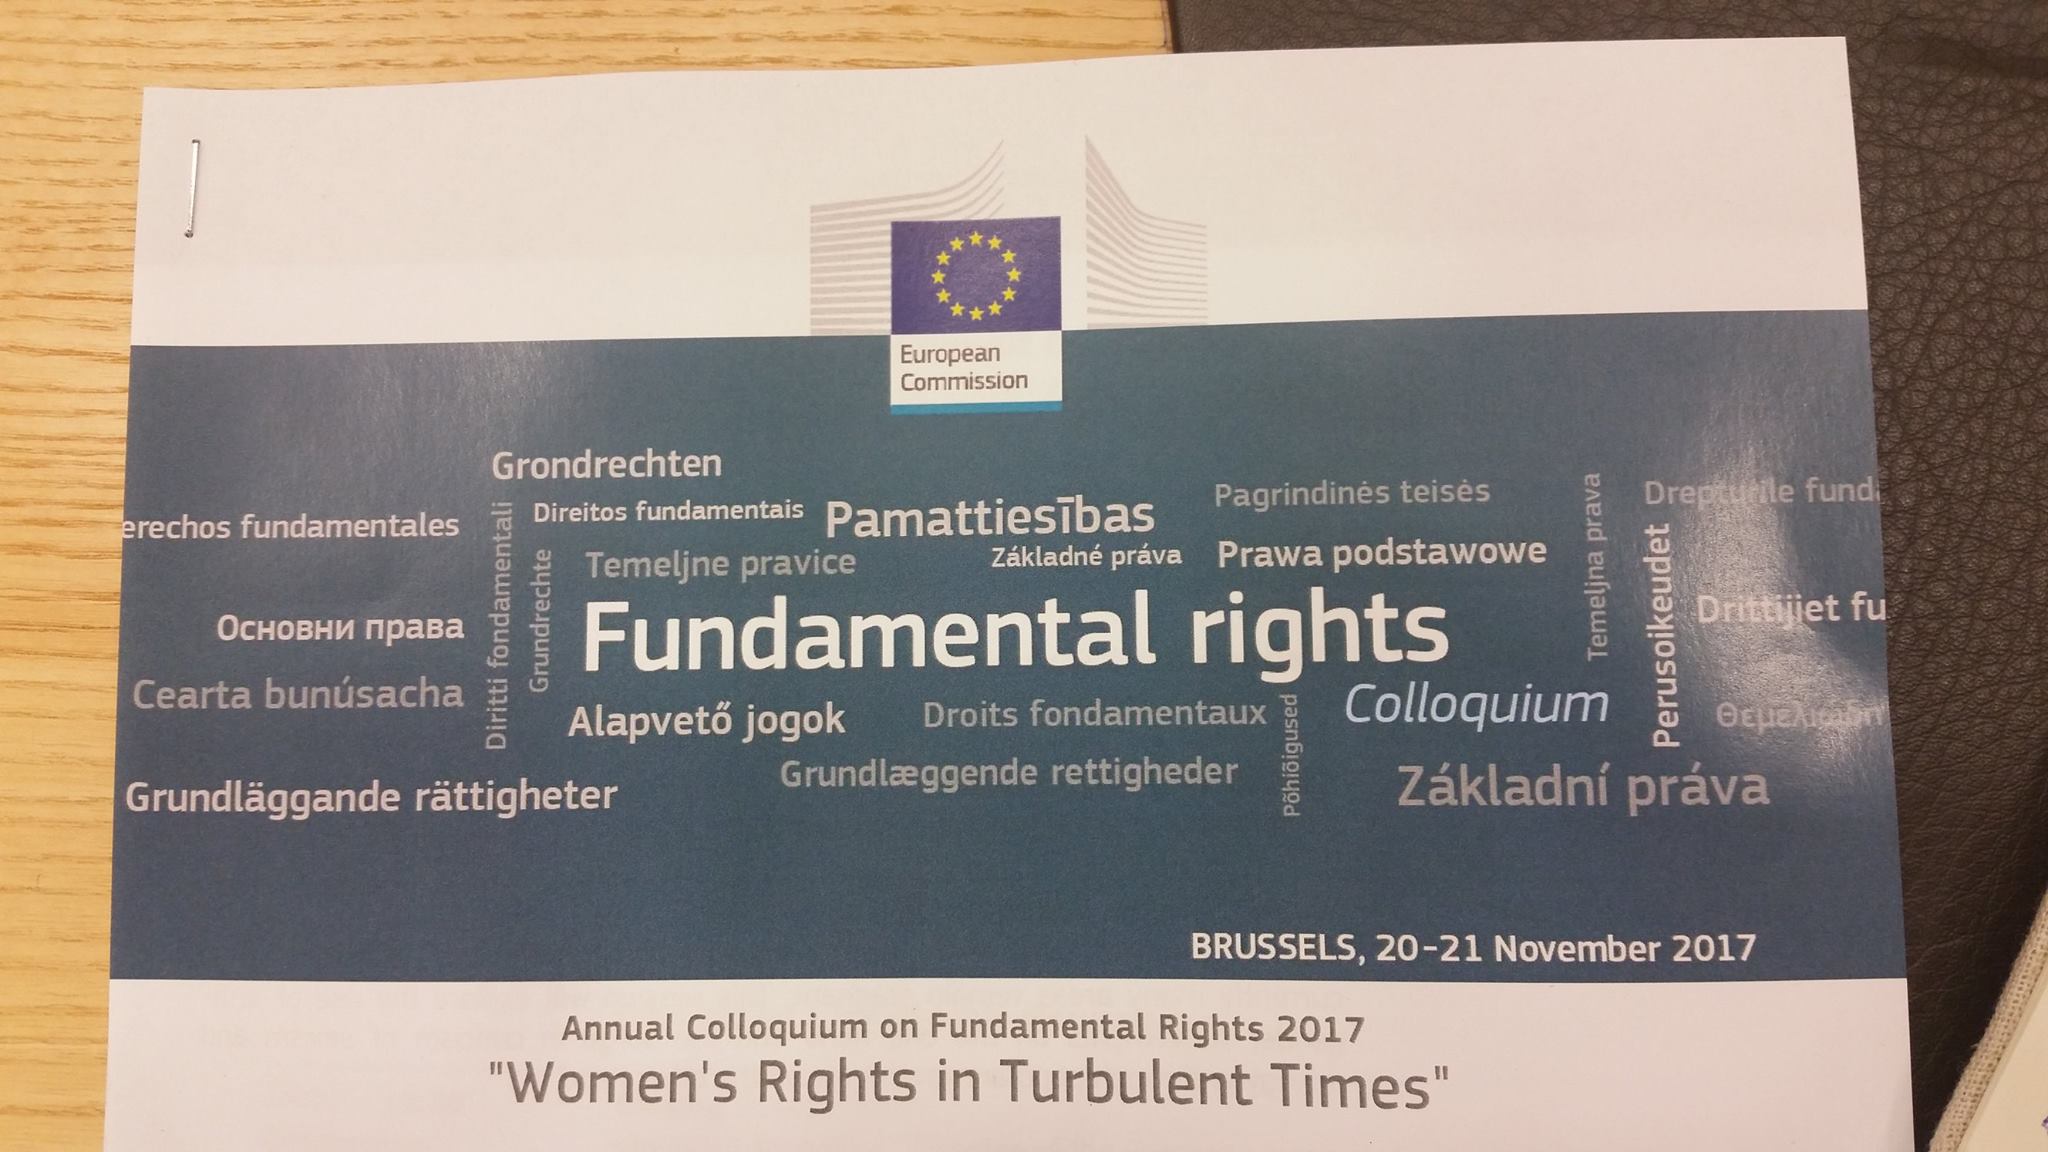 الدكتور خالد حاجي يشارك  في الندوة السنوية التي تنظمها المفوضية الأوروبية كل سنة لمناقشة قضية من قضايا الحقوق الأساسية.